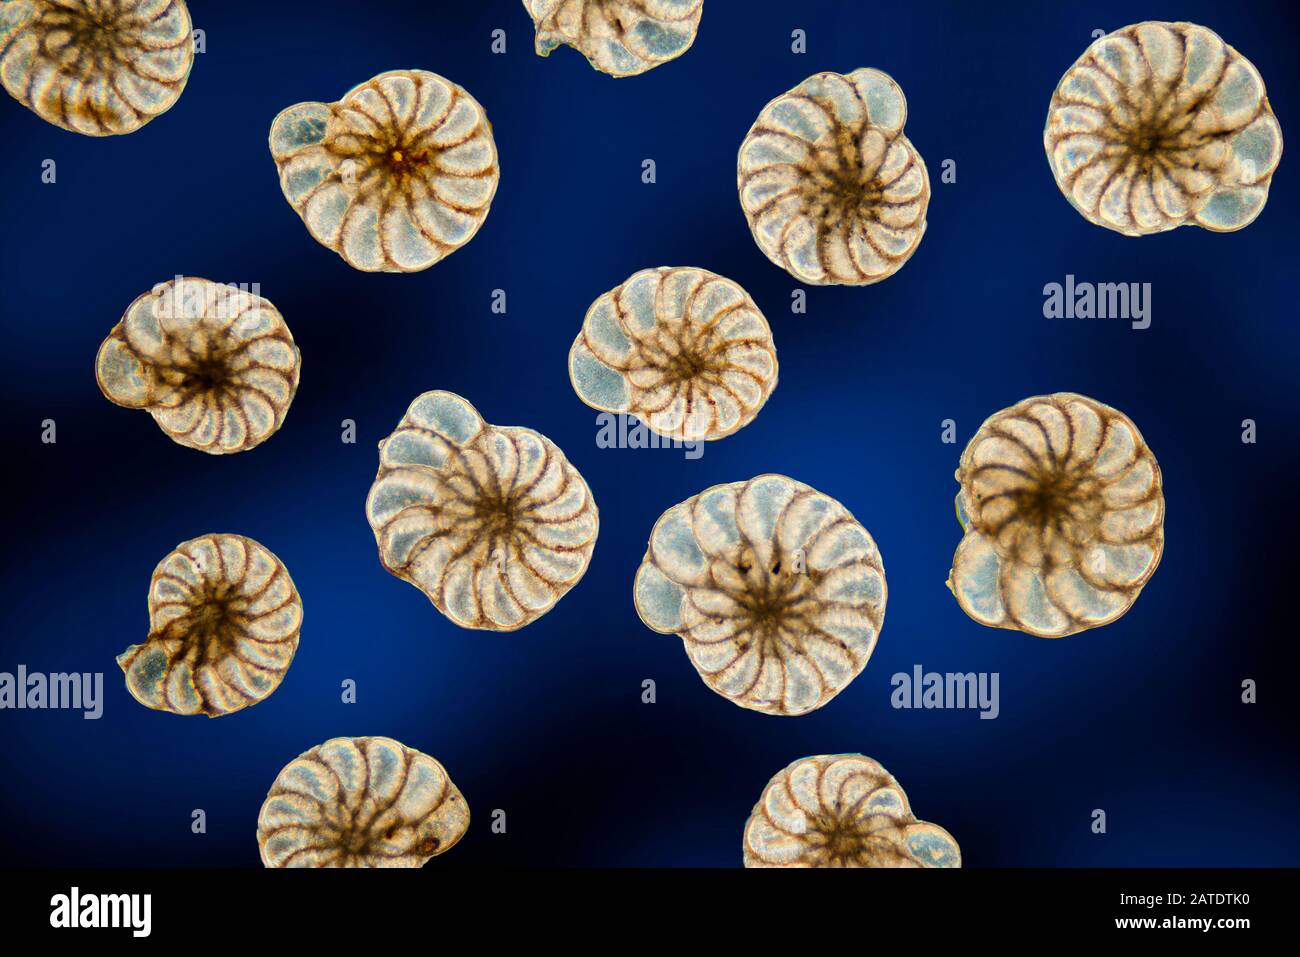 Foramanifera, Elphidium williamsoni, Swanage, UK Stock Photo